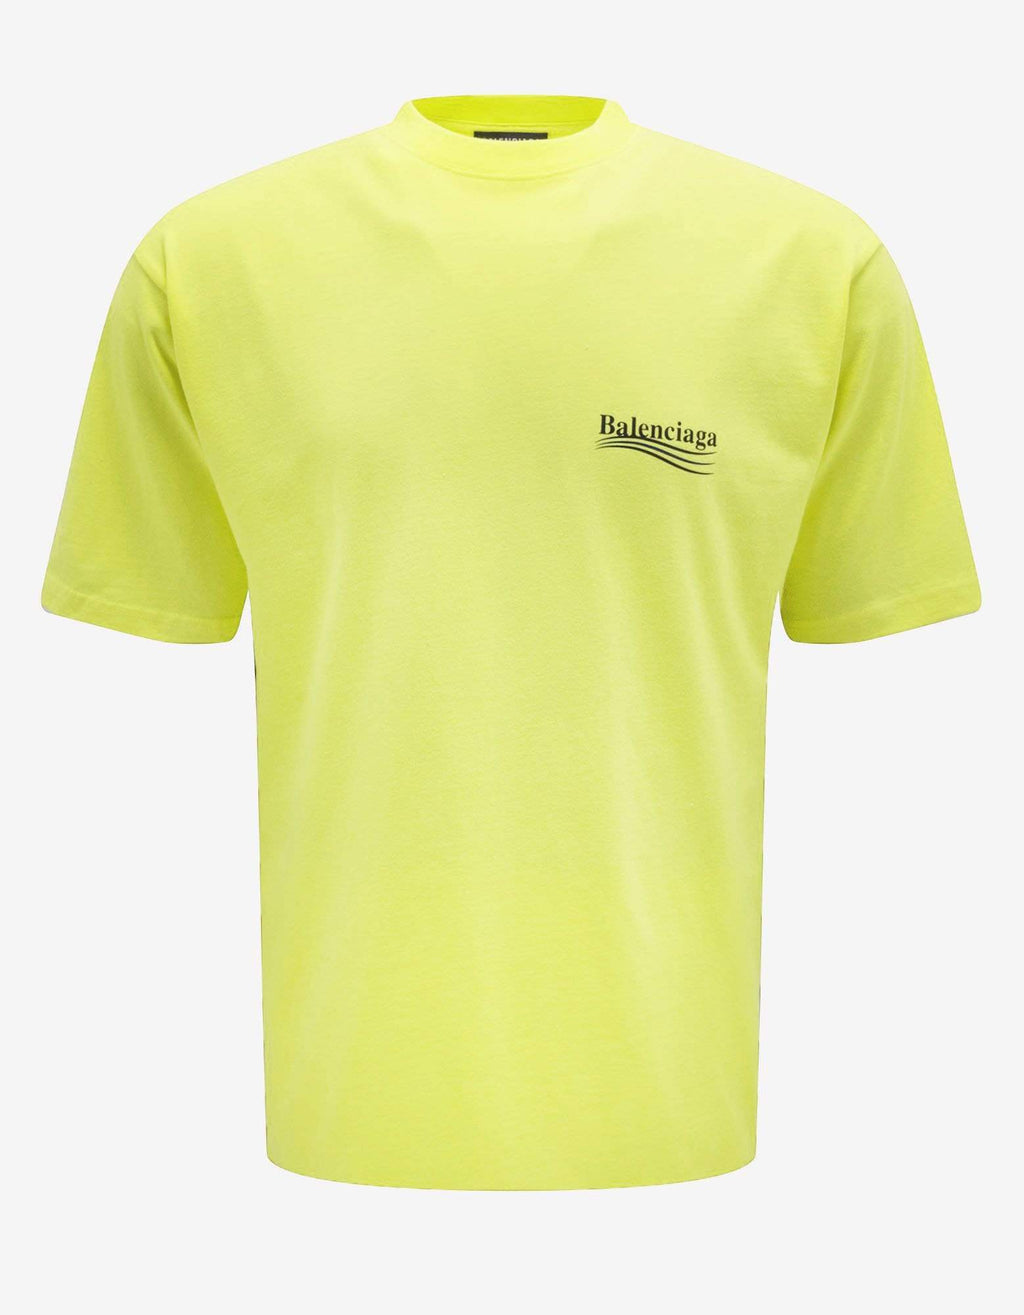 Balenciaga Balenciaga Fluorescent Yellow Political Logo Large Fit T-Shirt